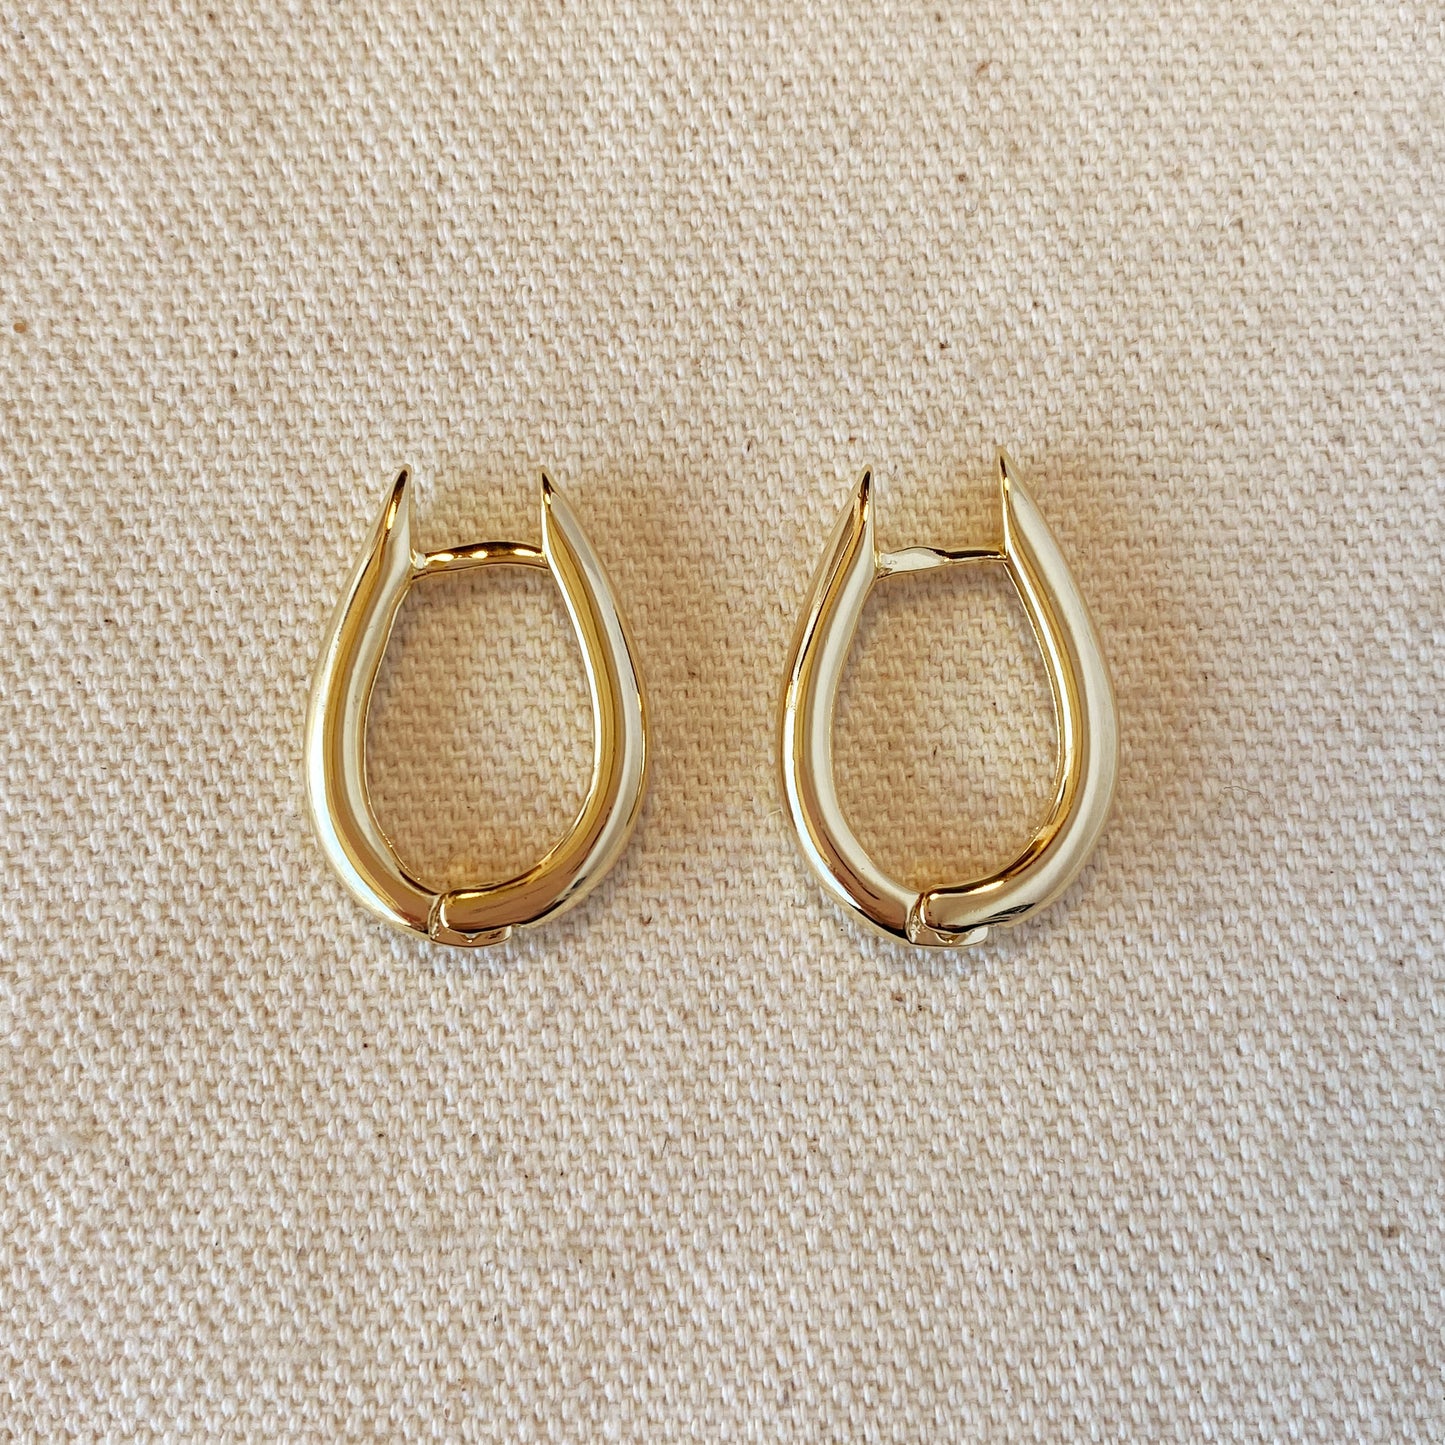 18k Gold Filled Large U Shaped Hoop Earrings